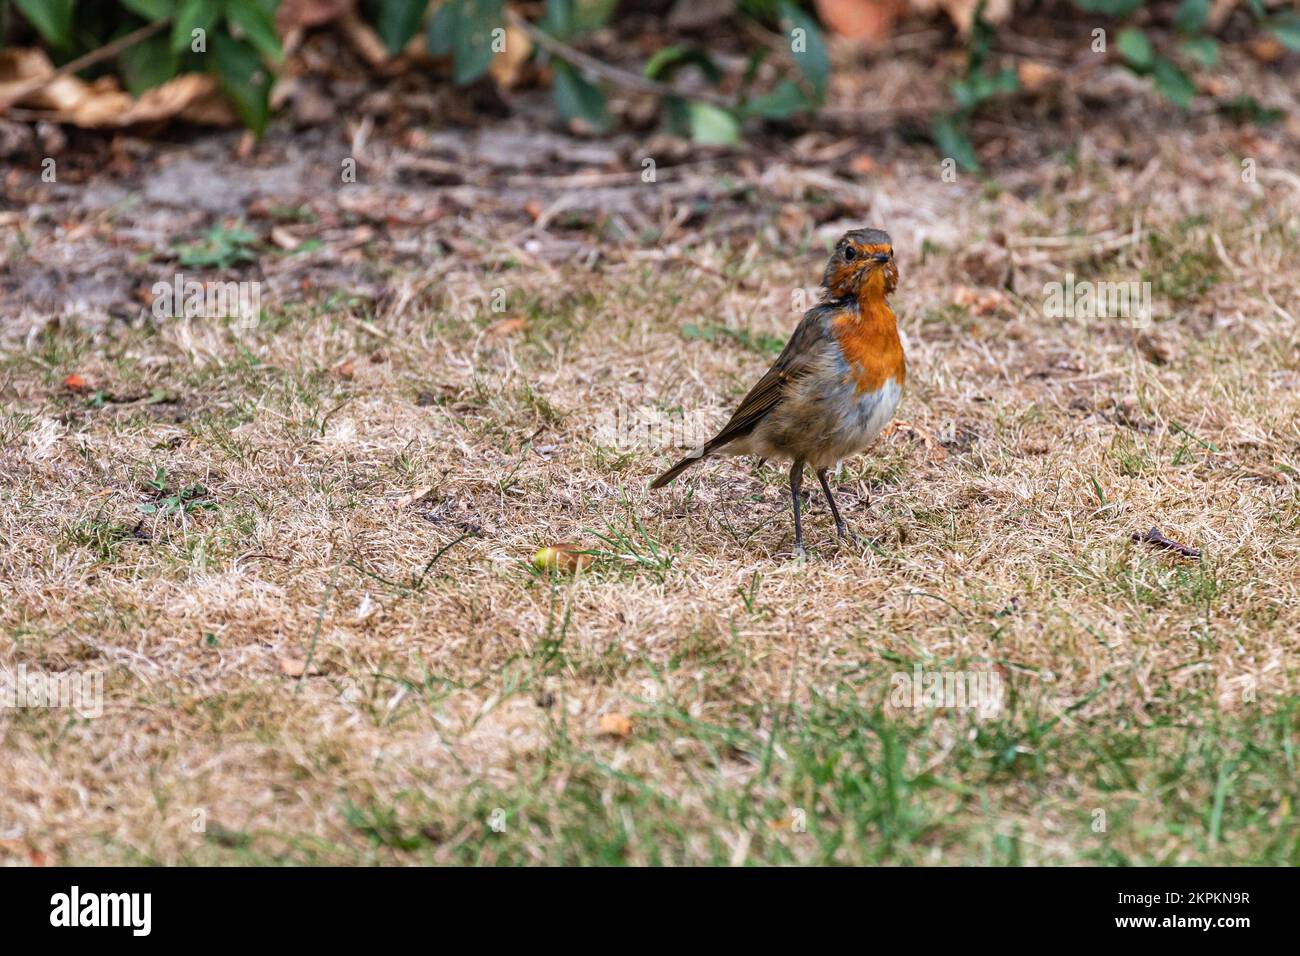 Un brutto Robin in un giardino in Germania. Foto di alta qualità da un giovane Robin durante le nostre vacanze in Germania. Foto Stock